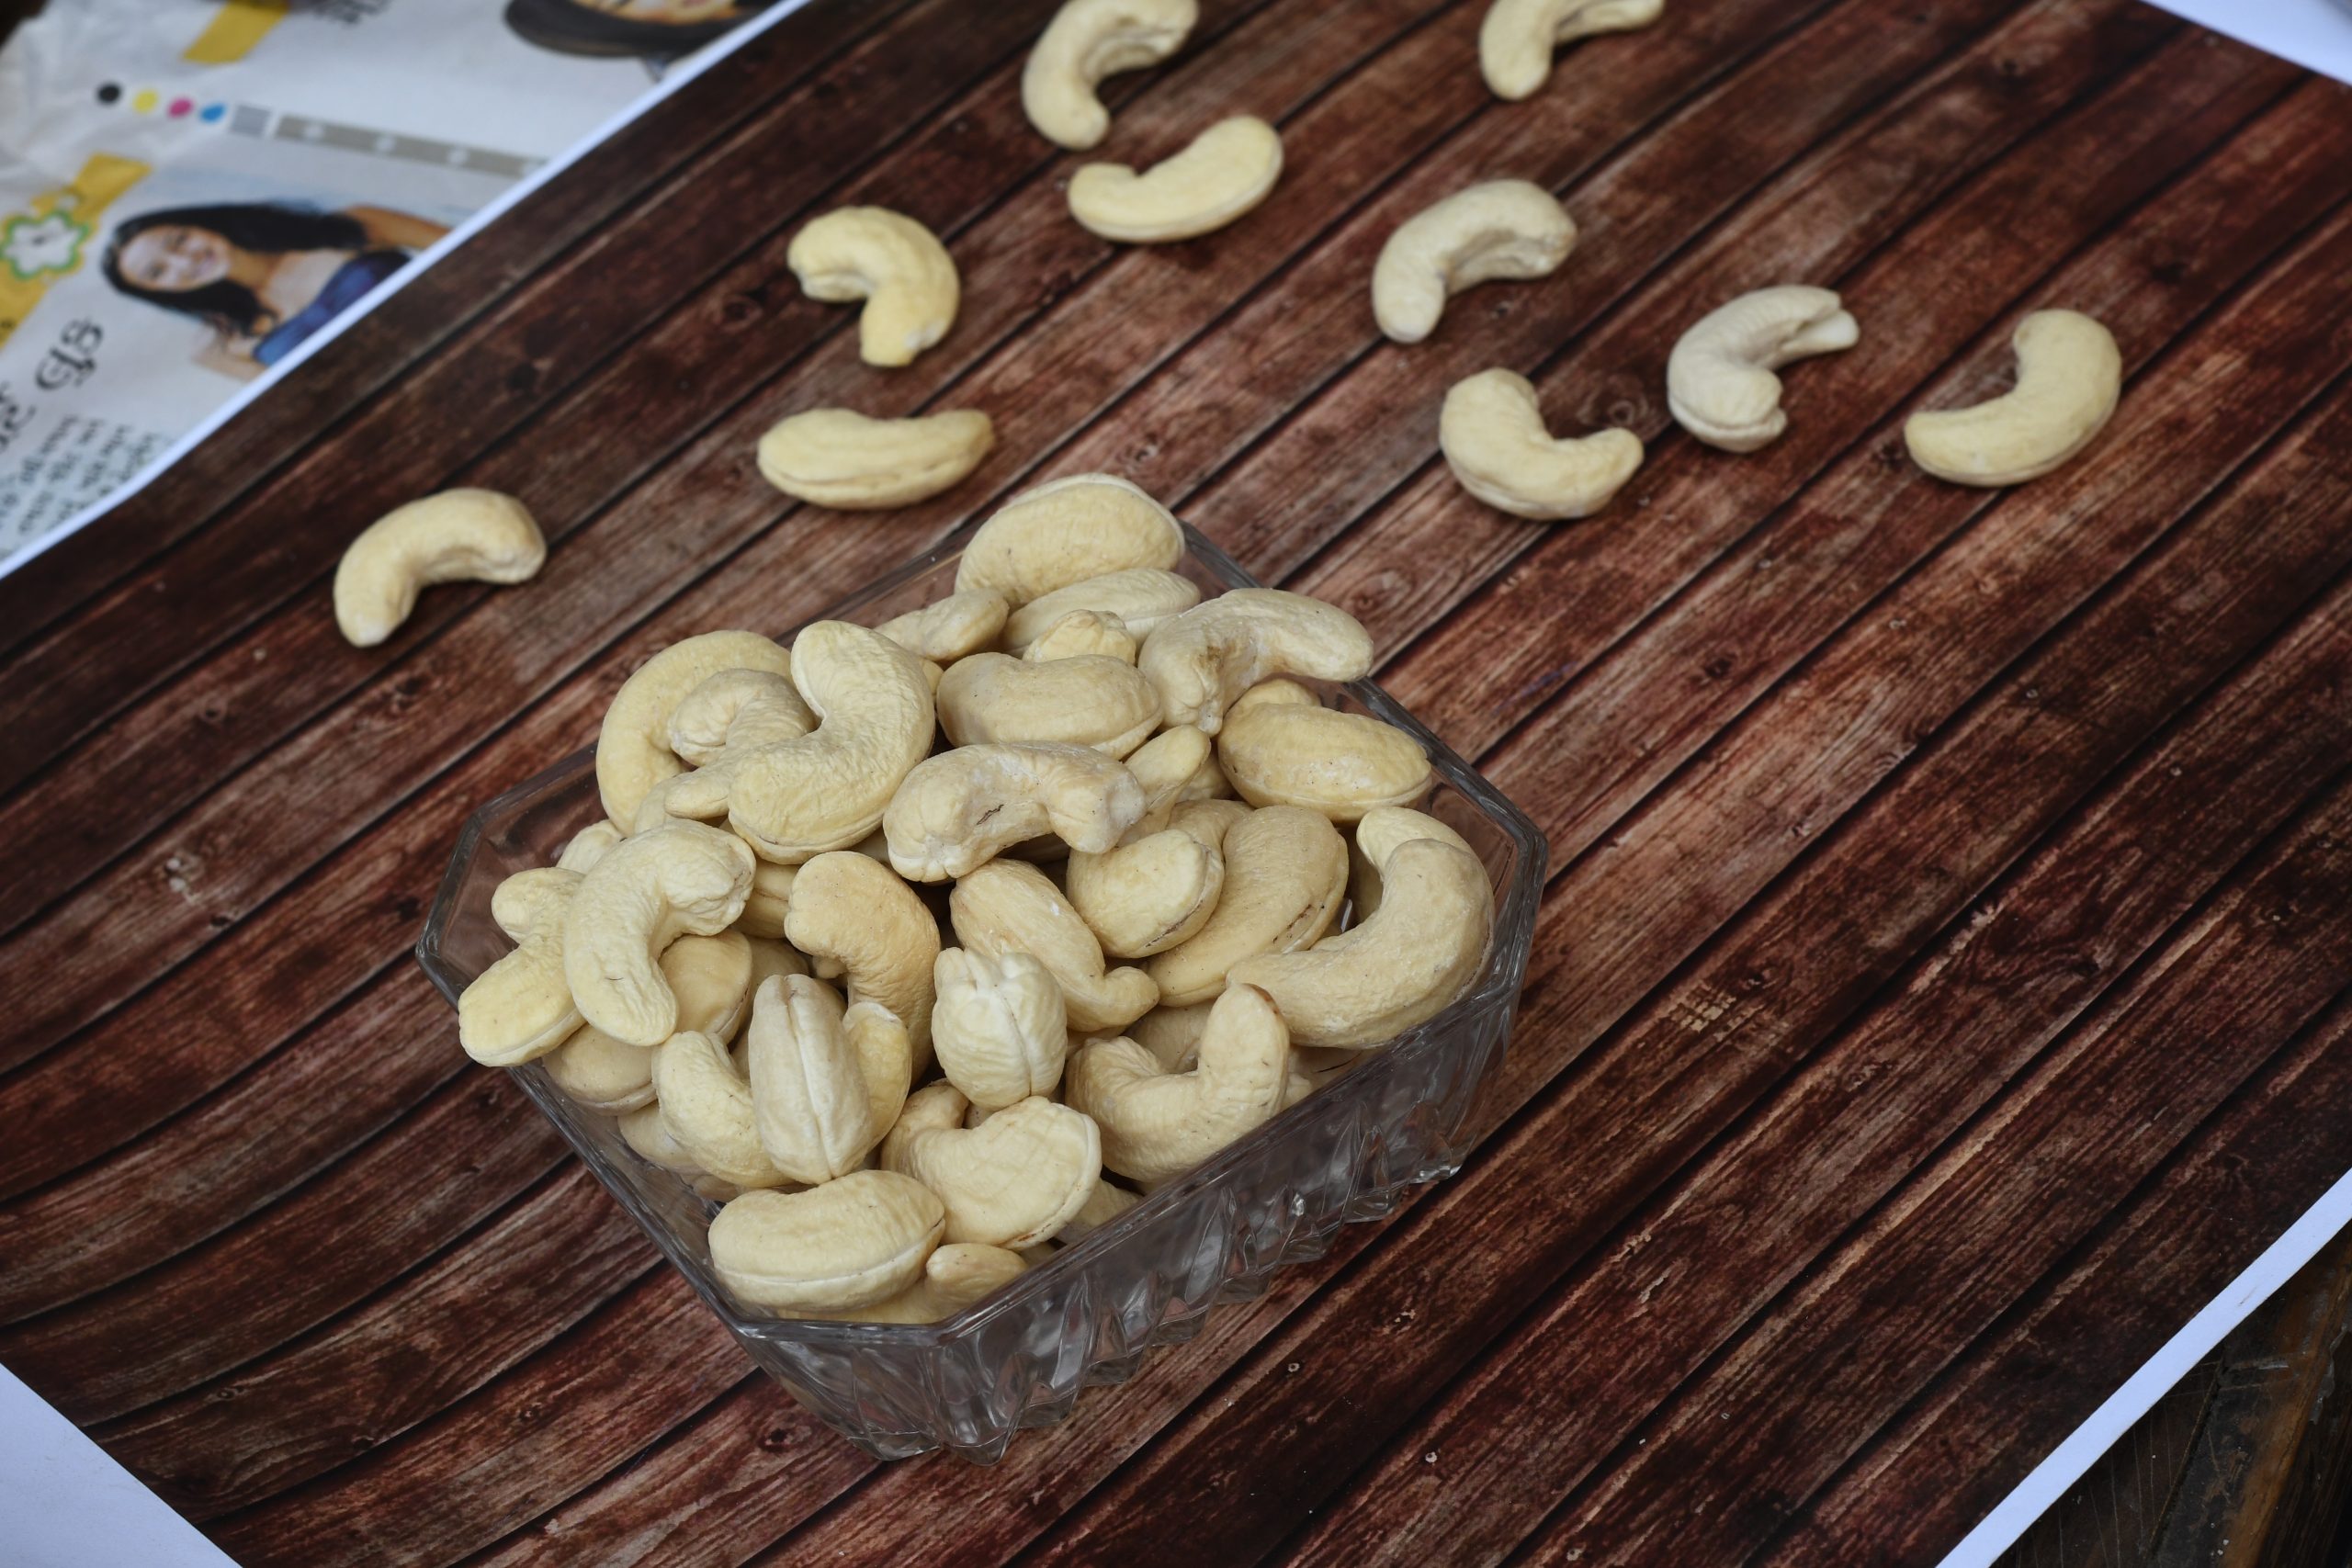 Benefits of Cashewnuts: आइए जानते है रोज सुबह खाली पेट काजू खाना स्वास्थ्य के लिए बहुत फायदेमंद होता है